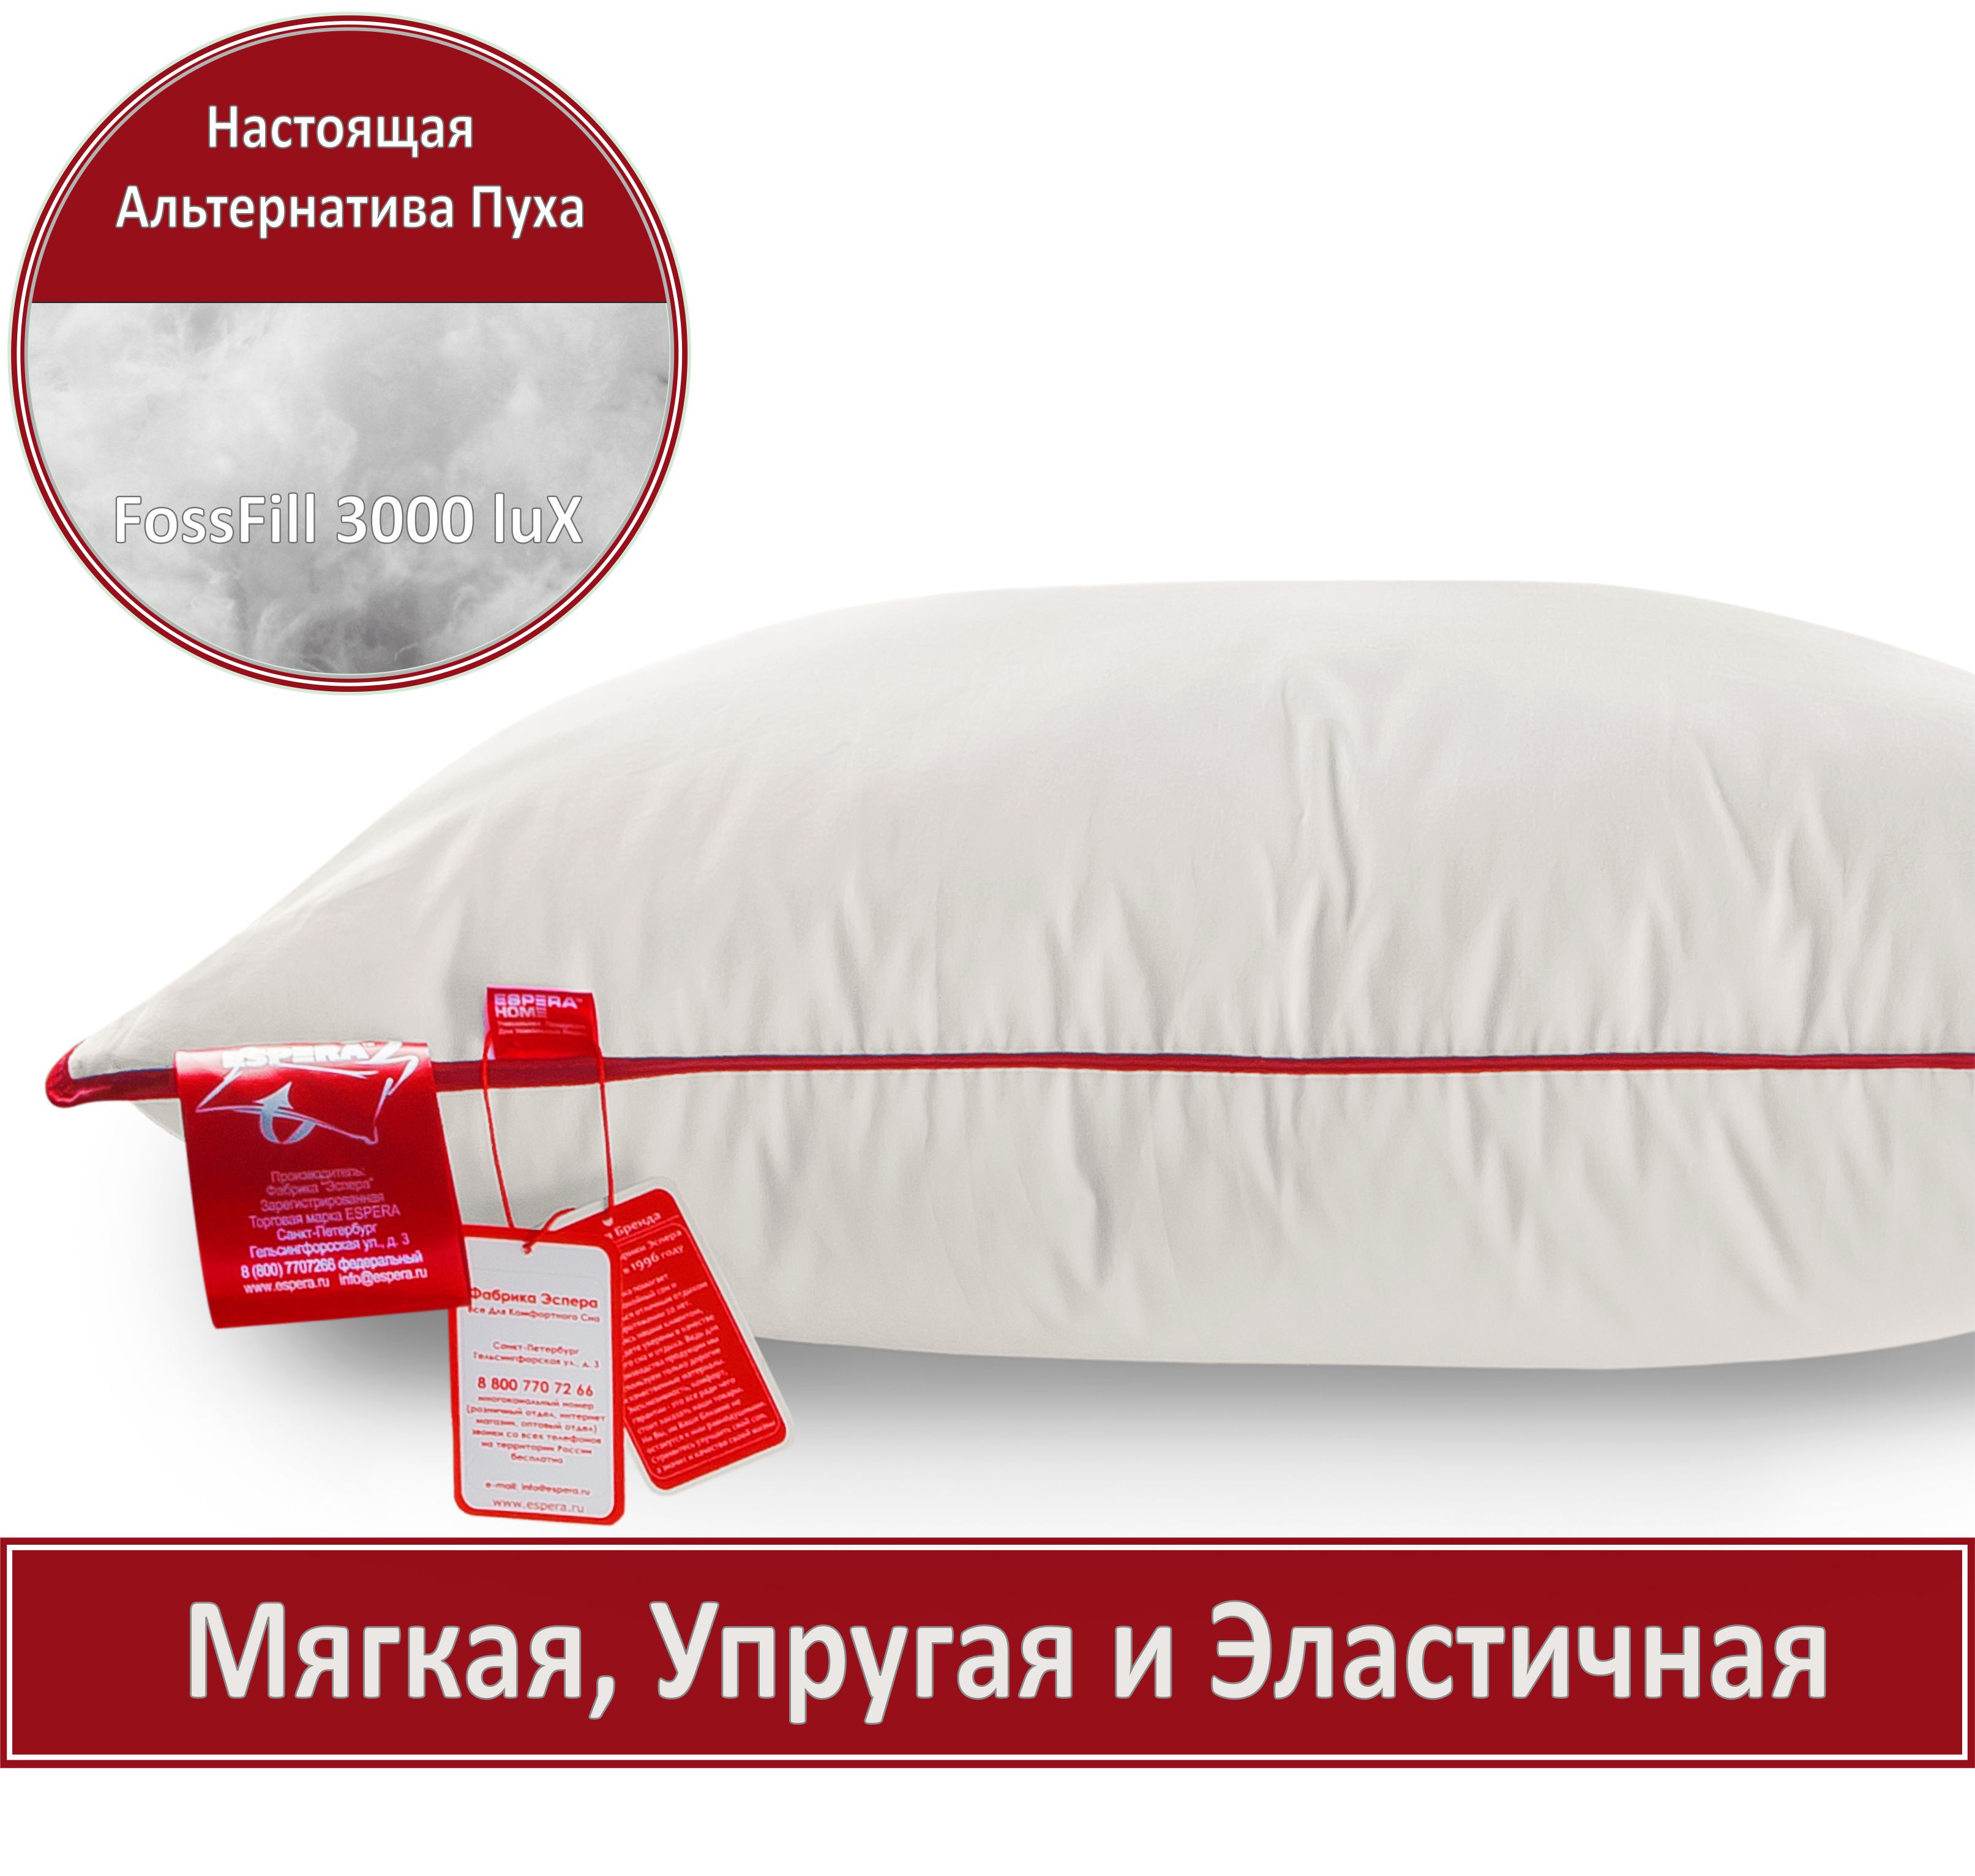 Купить подушку «Espera Comfort» 70см х 70см от Фабрика Эспера со скидкой